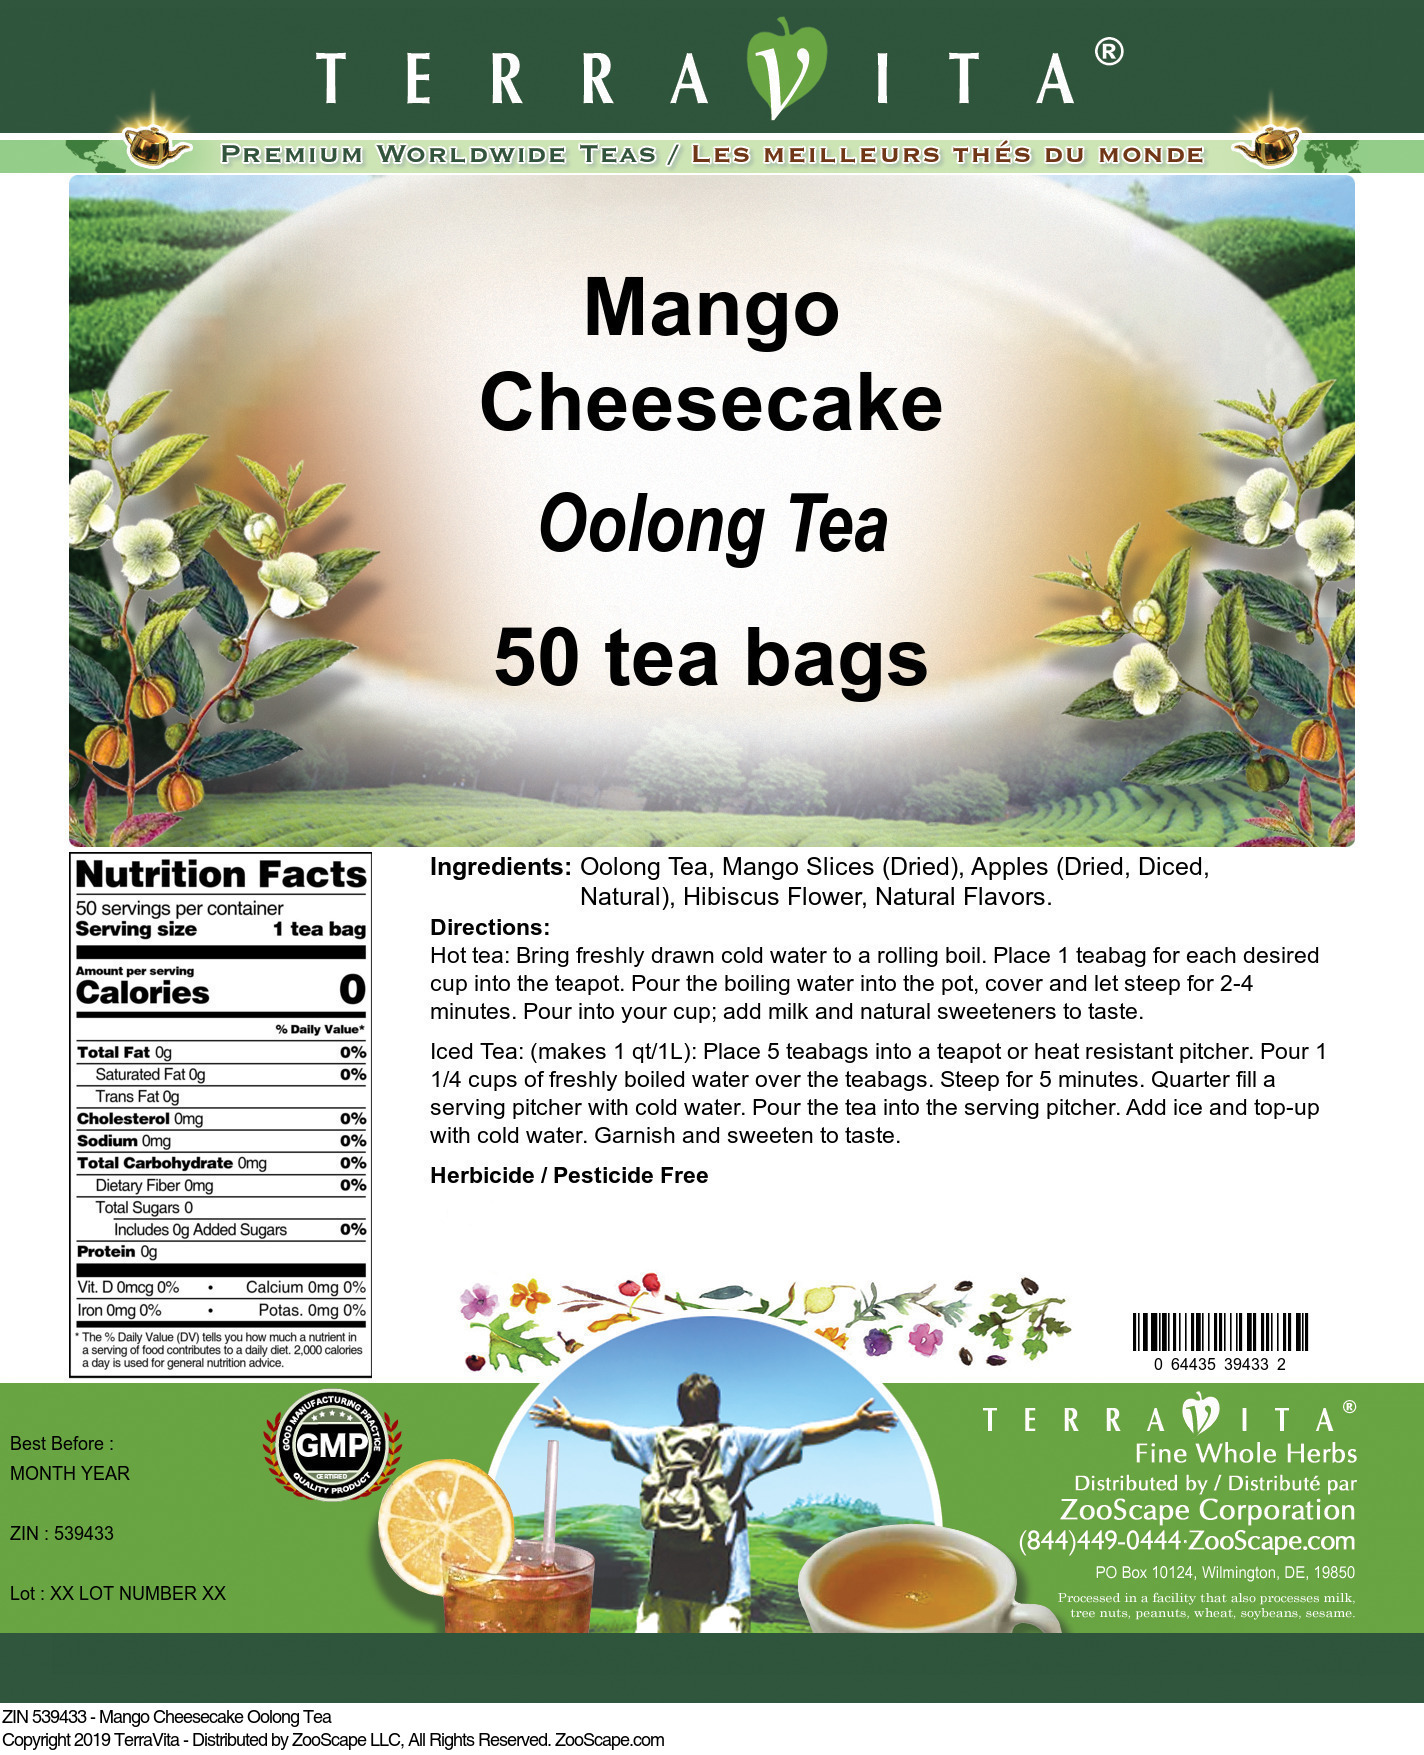 Mango Cheesecake Oolong Tea - Label